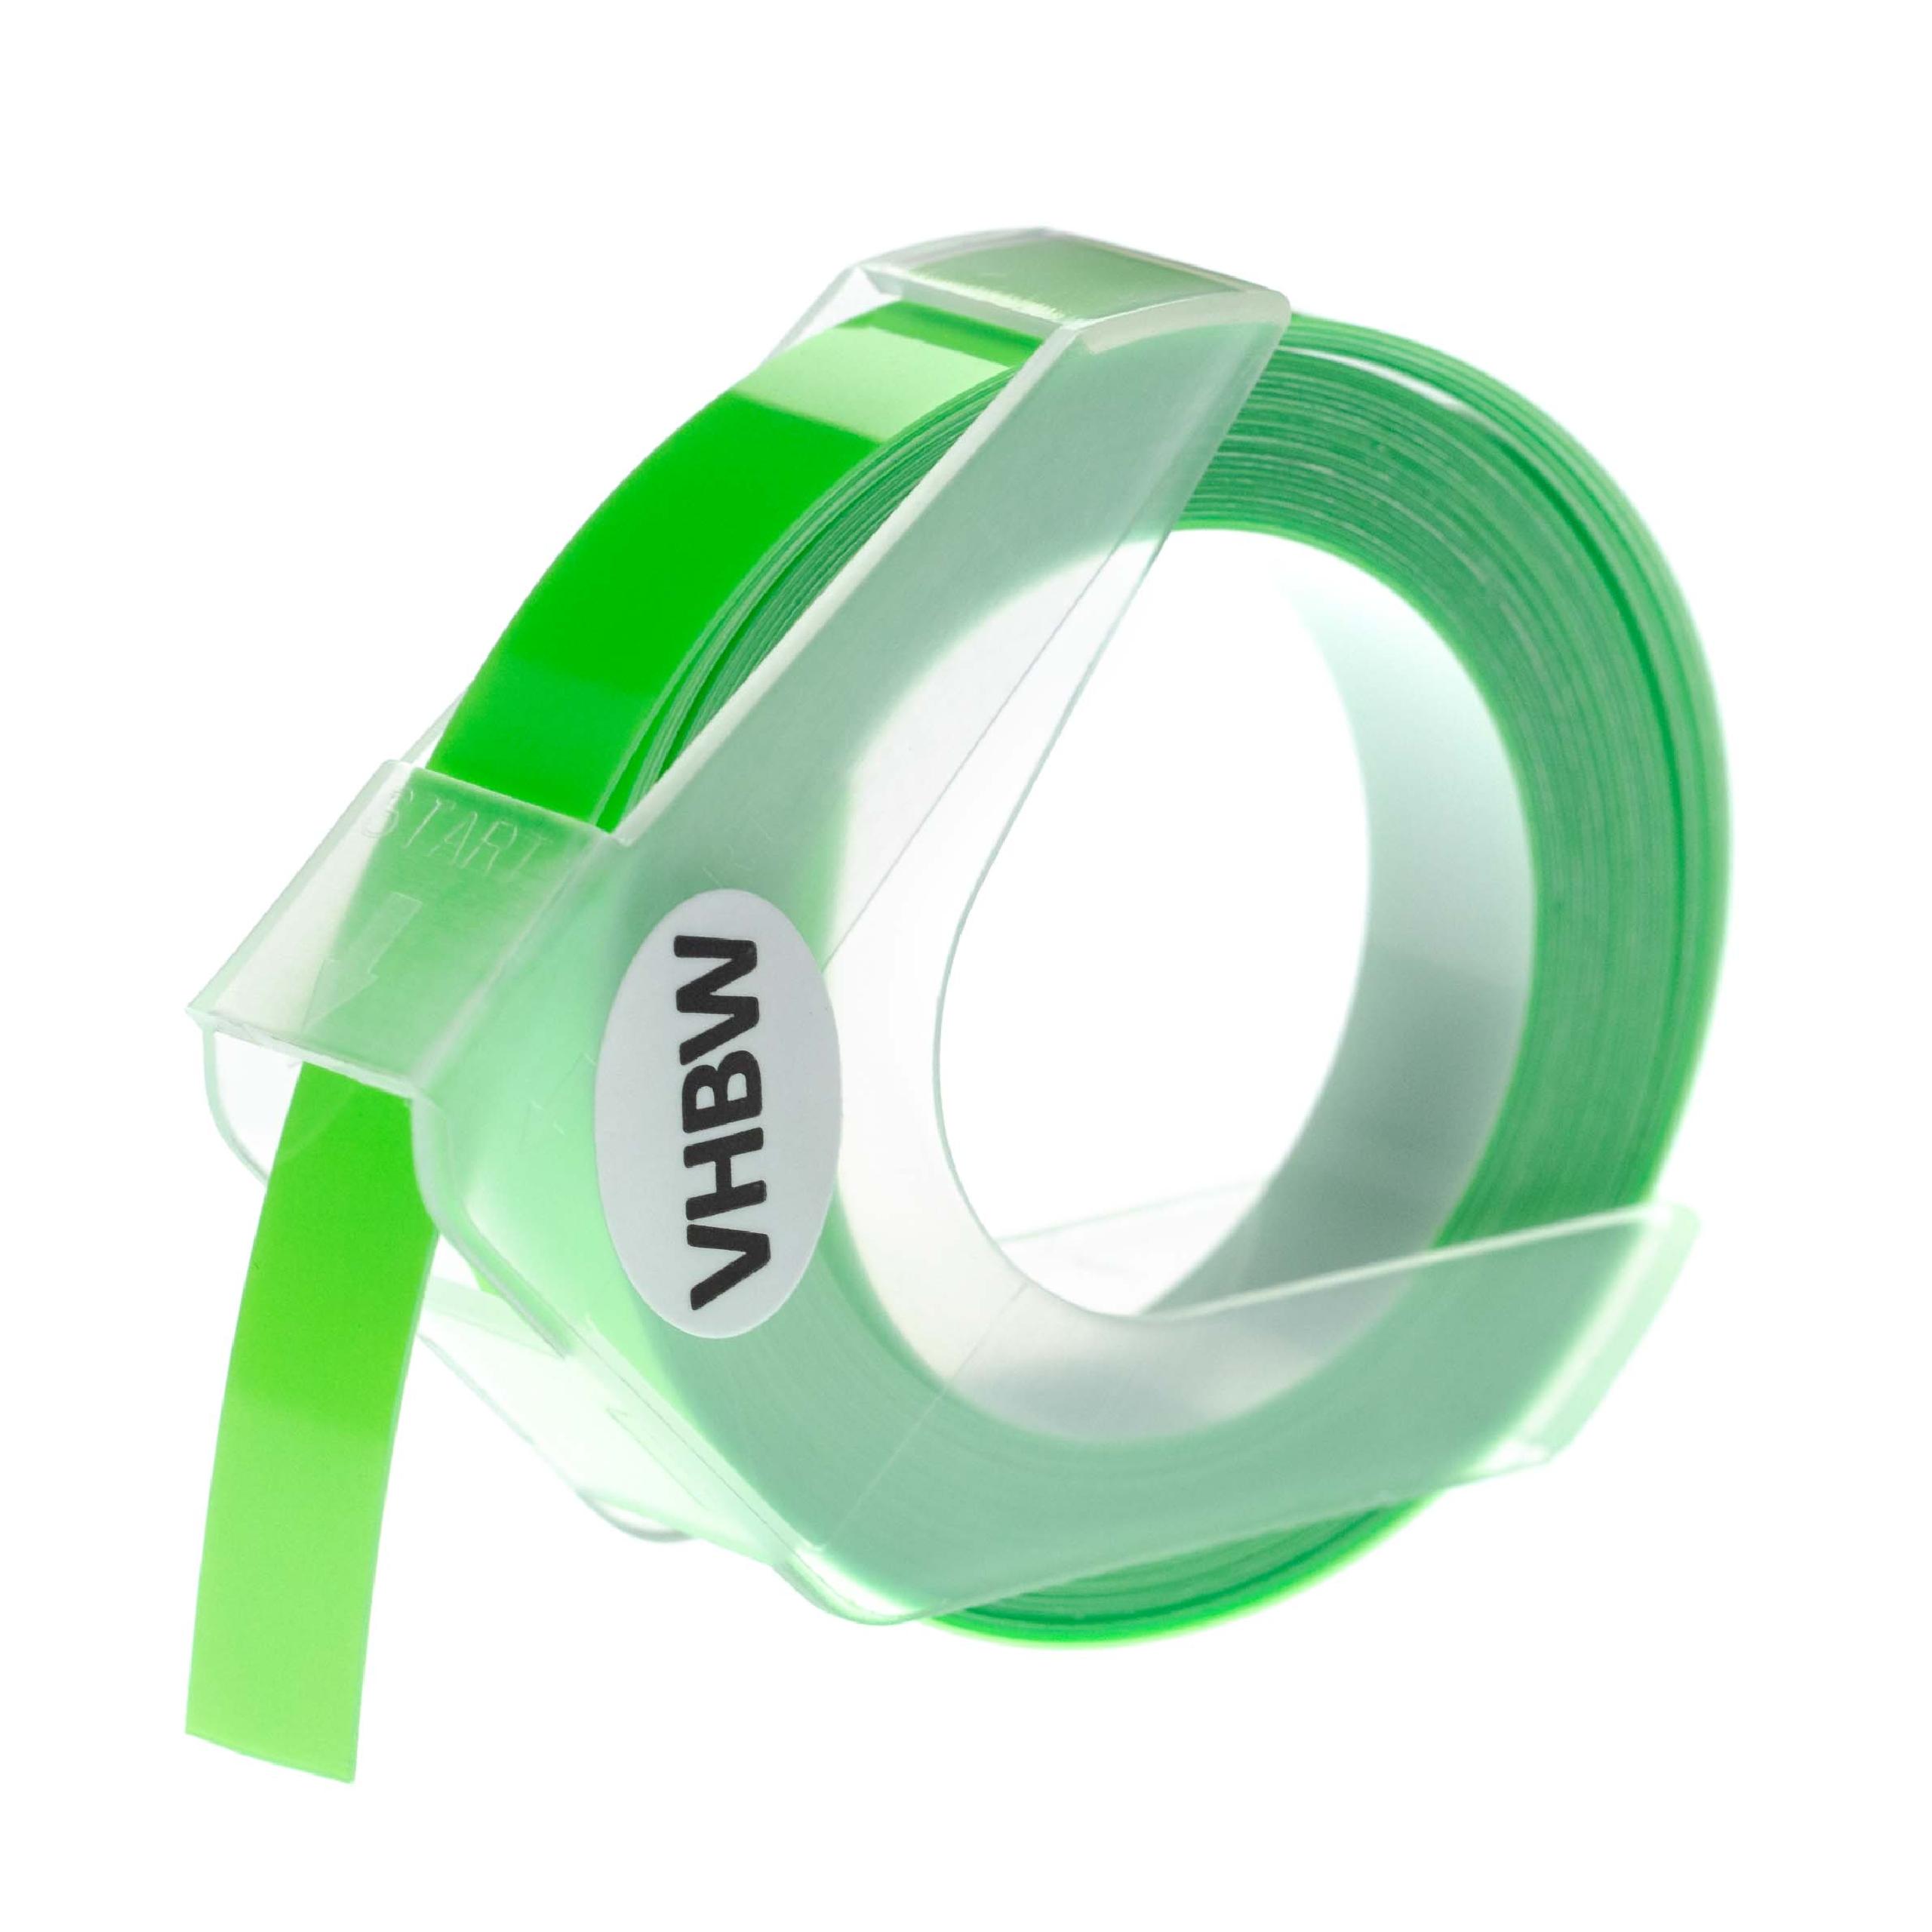 Nastro goffratura 3D sostituisce Dymo S0898290, 0898290 per etichettatrice Motex 9mm bianco su verde fluo